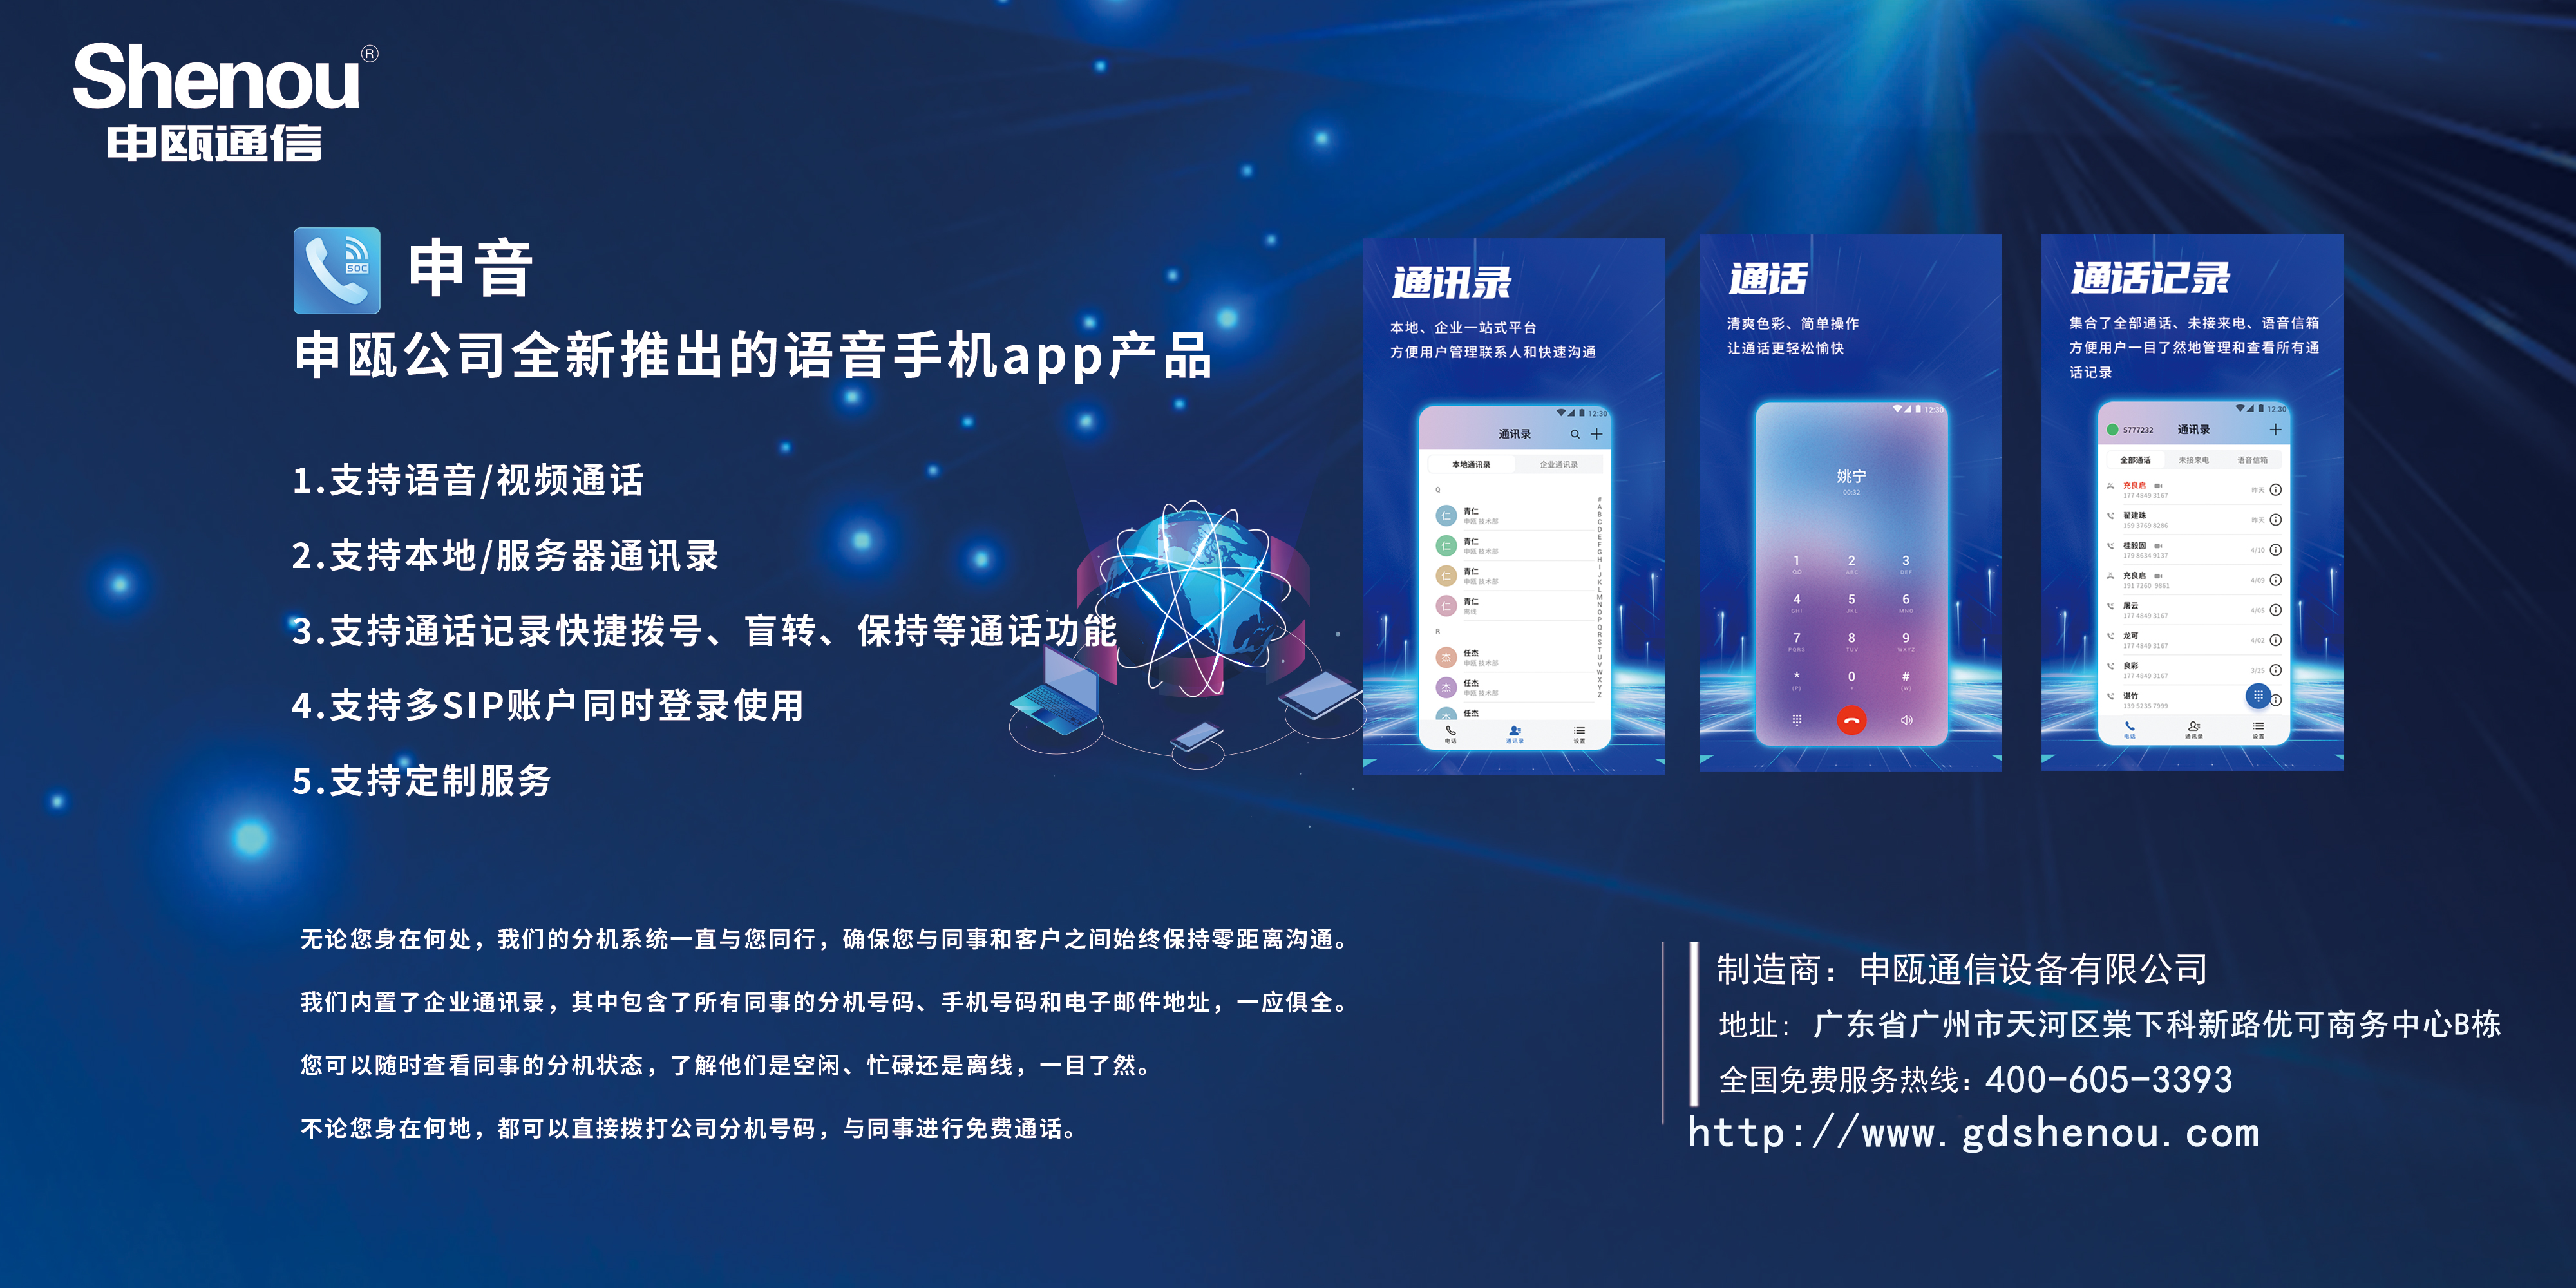 申瓯公司全新推出的语音手机app产品-申音